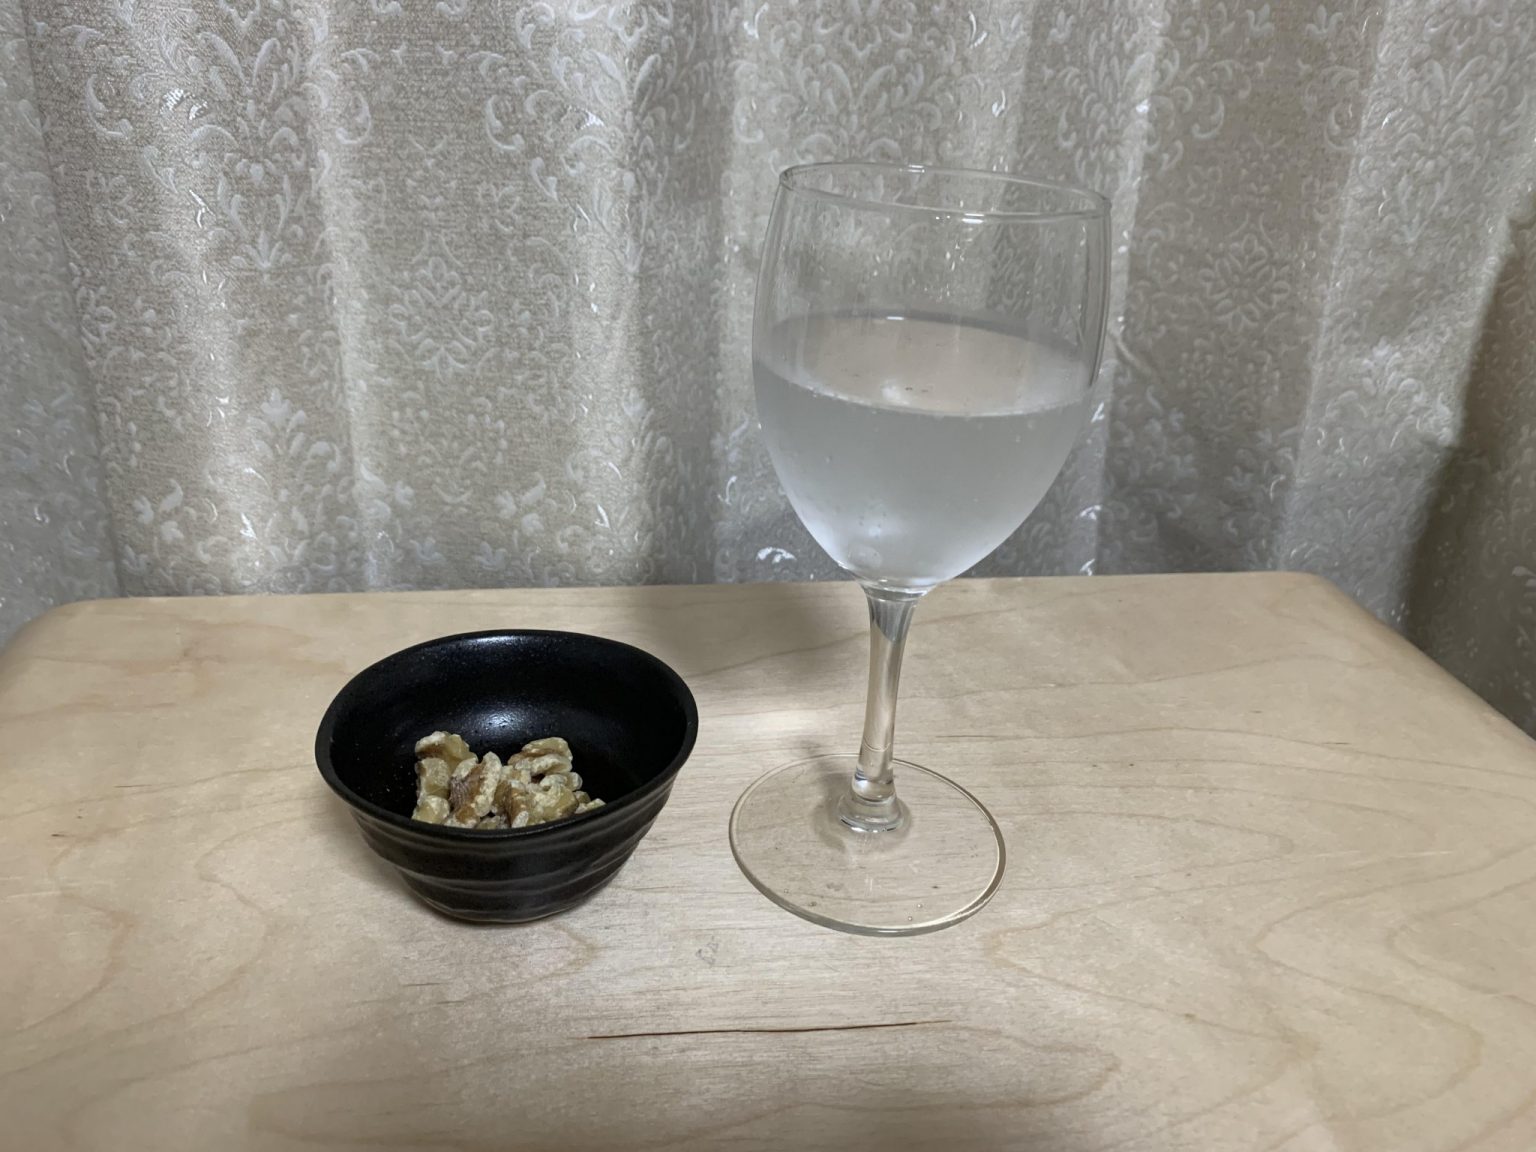 主婦の保城早耶香さんは、いただきもののスパークリングワインと、ダイエットにいいという素焼きのくるみを。